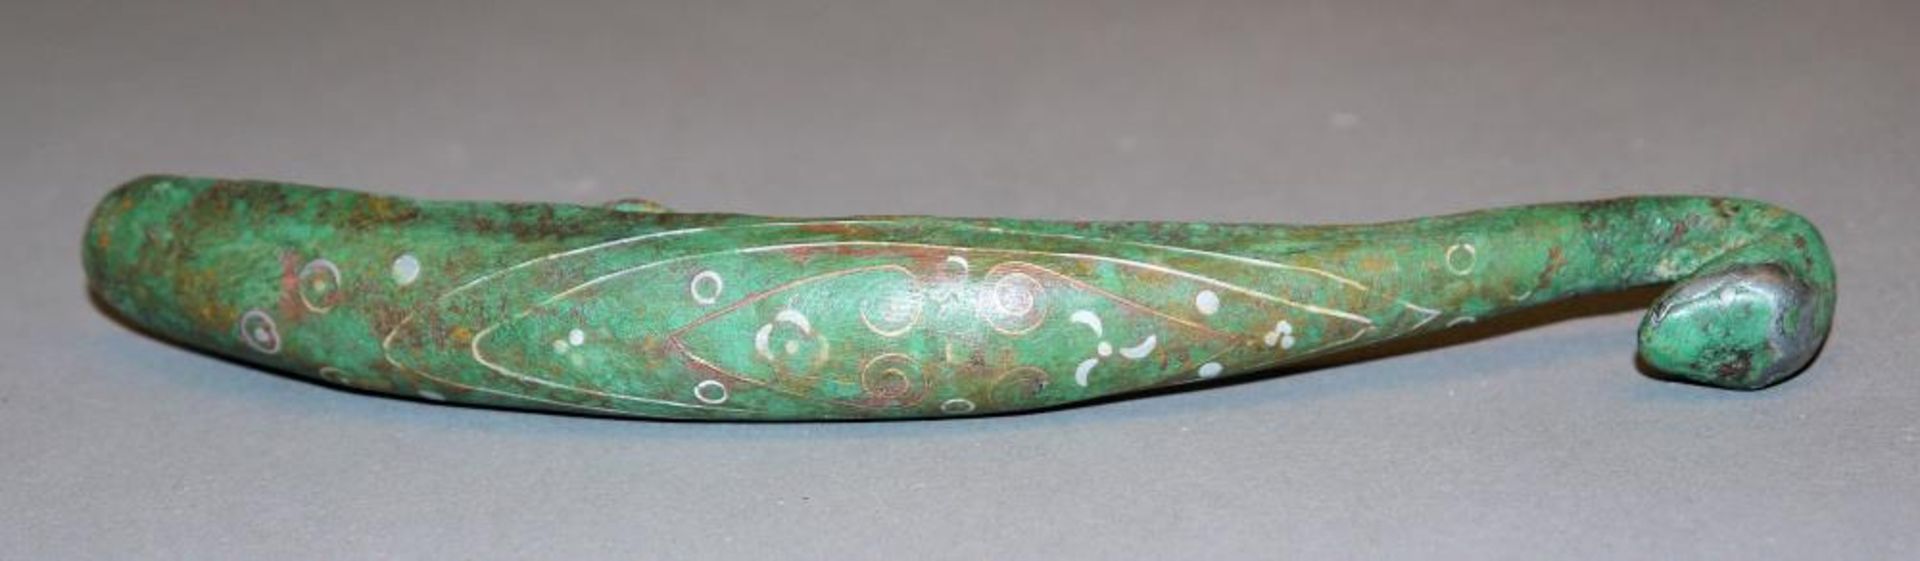 Großer Gürtelhaken aus Bronze, wohl Streitende Reiche oder Han, China 3. Jh. v. Chr. oder später - Image 2 of 3